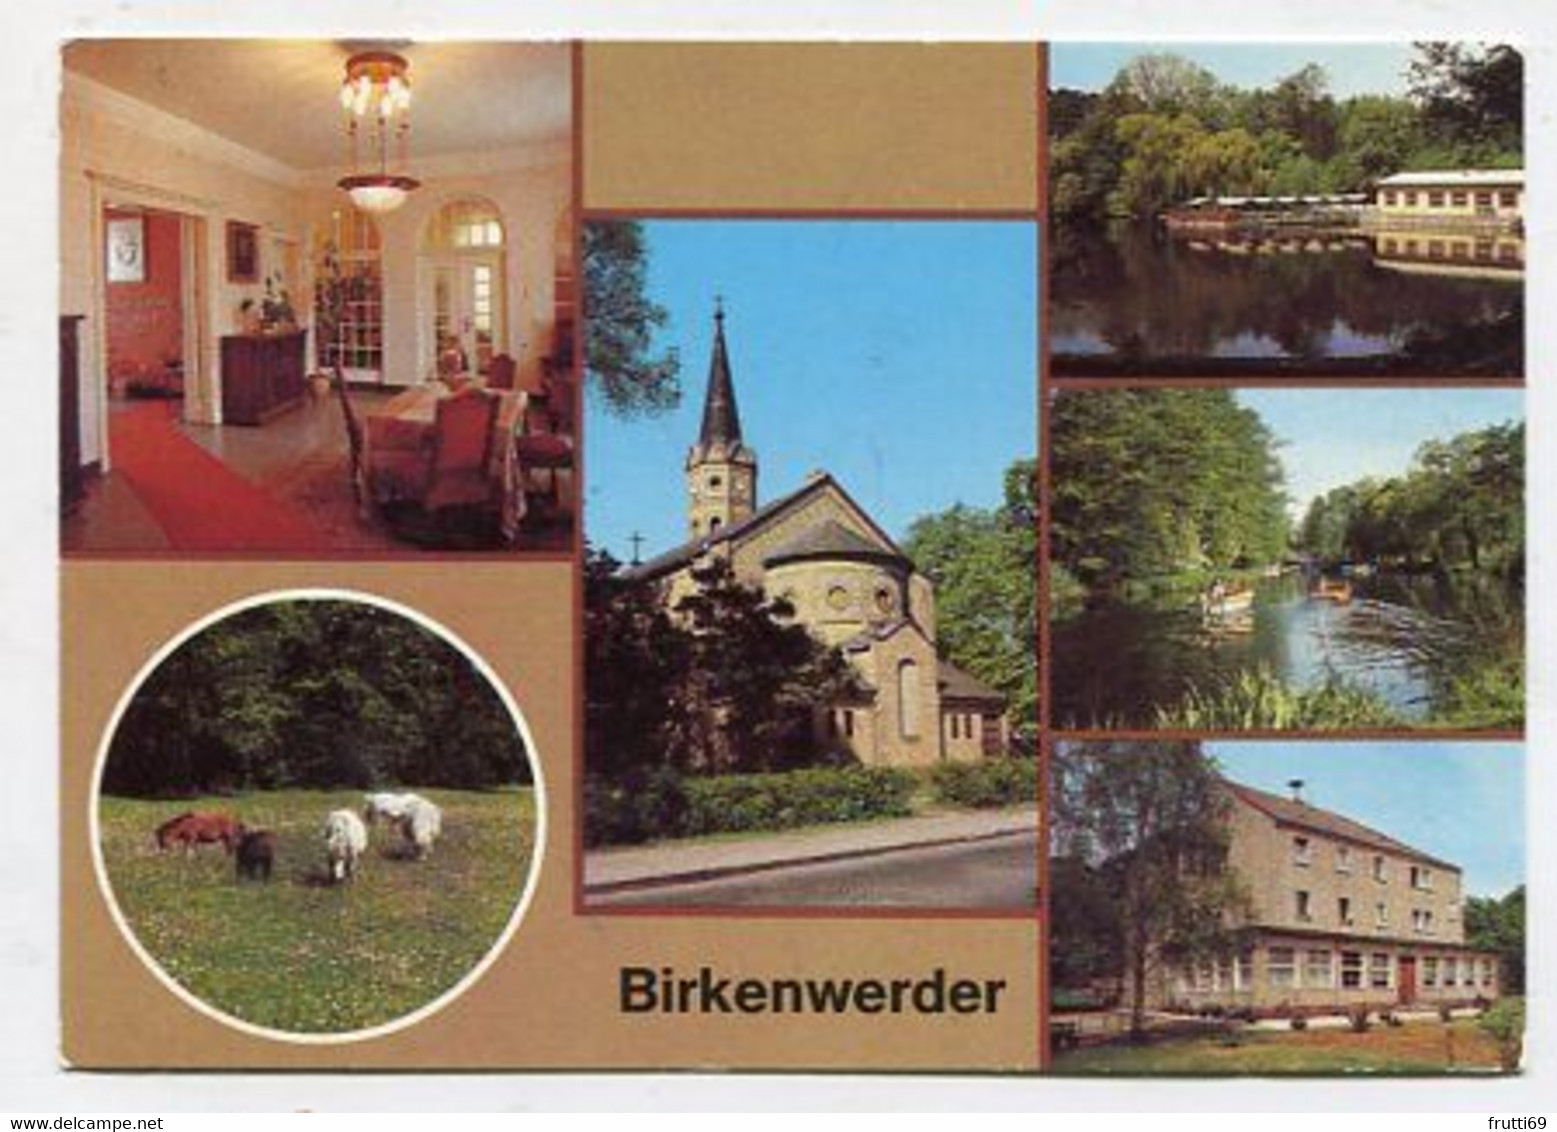 AK 017388 GERMANY - Birkenwerder - Birkenwerder